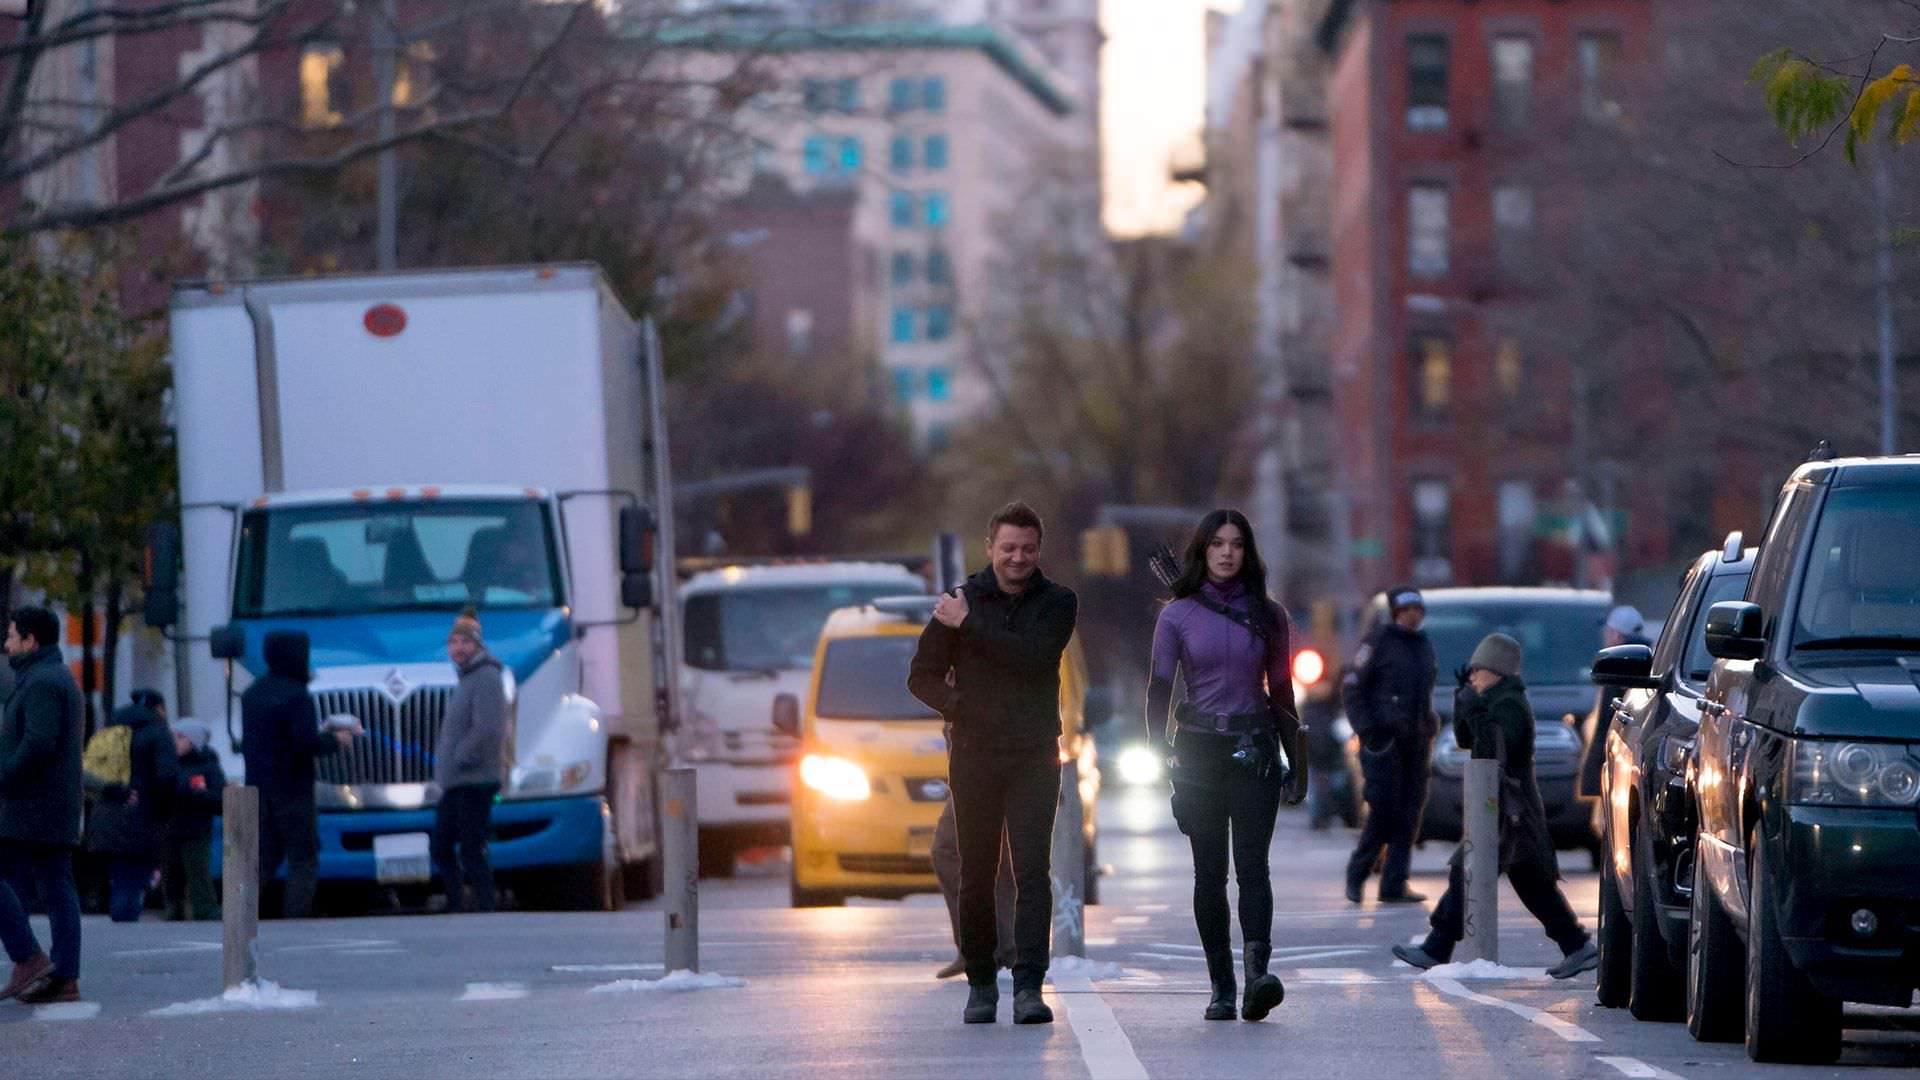 جرمی رنر در نقش کلینت بارتون و هیلی استاینفلد در نقش کیت بیشاپ در حال پیاده روی در خیابان در قسمت پنجم سریال Hawkeye